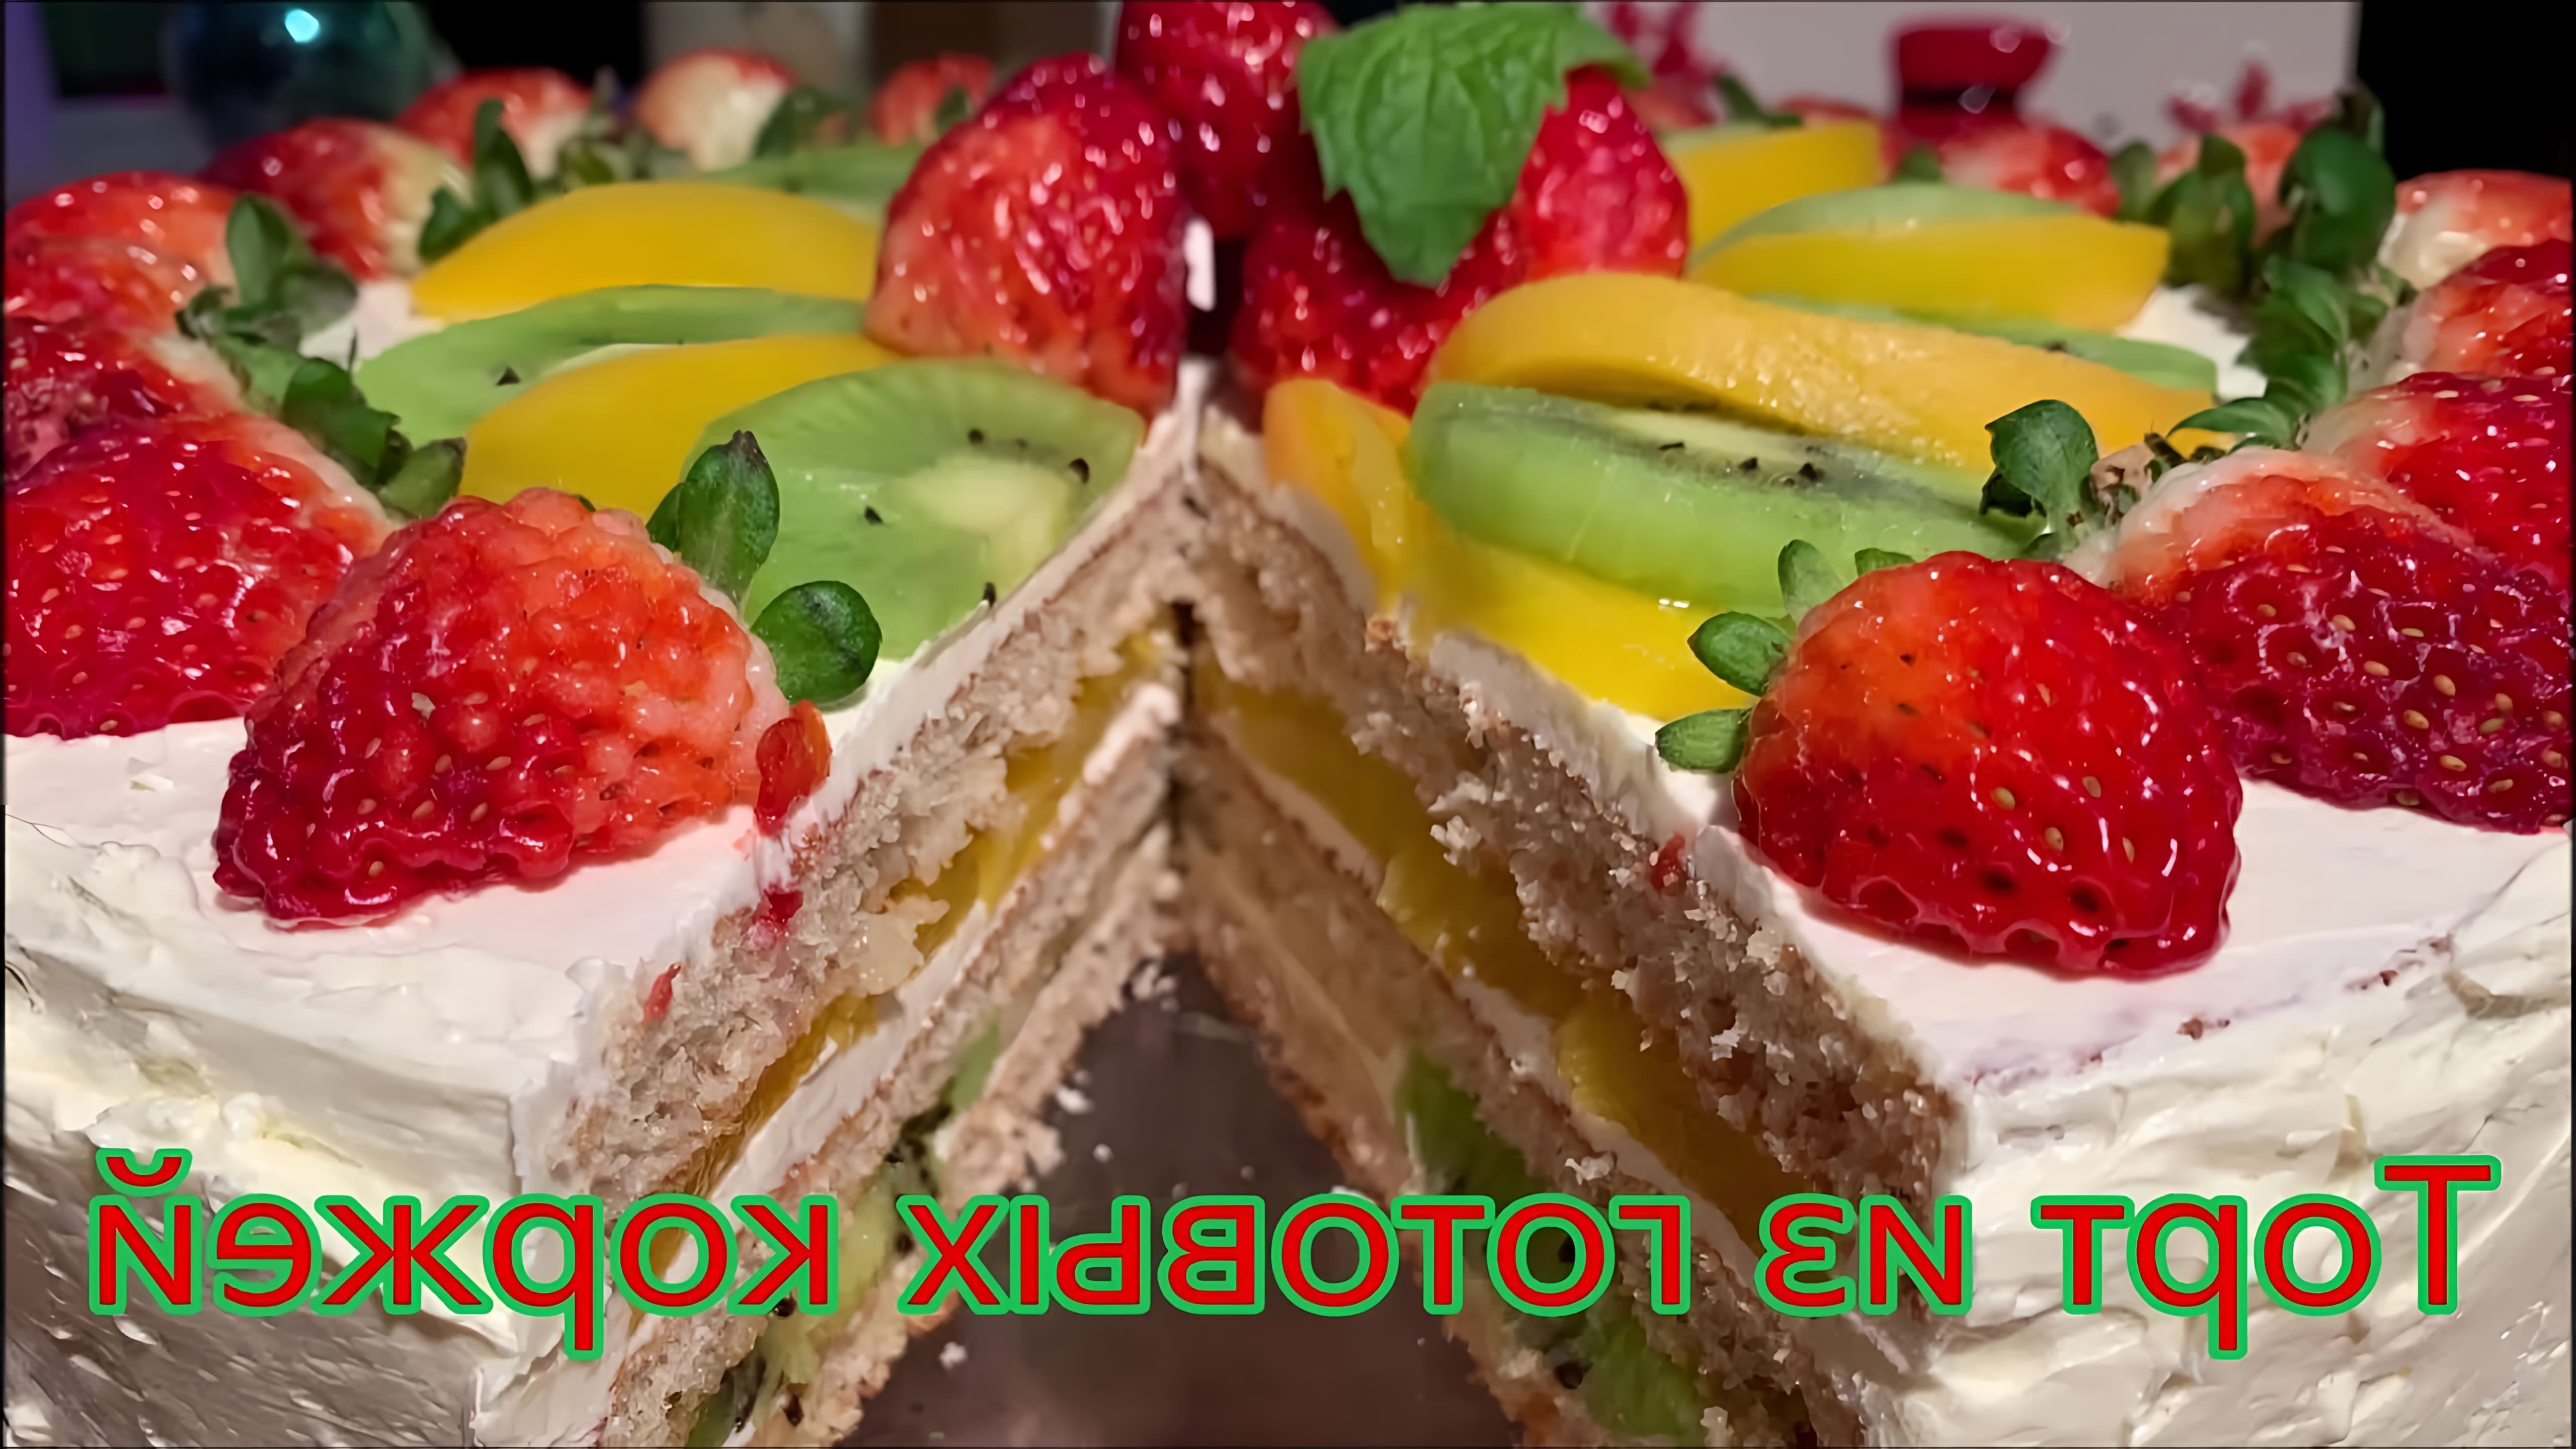 В этом видео демонстрируется процесс приготовления быстрого бисквитного торта с фруктами